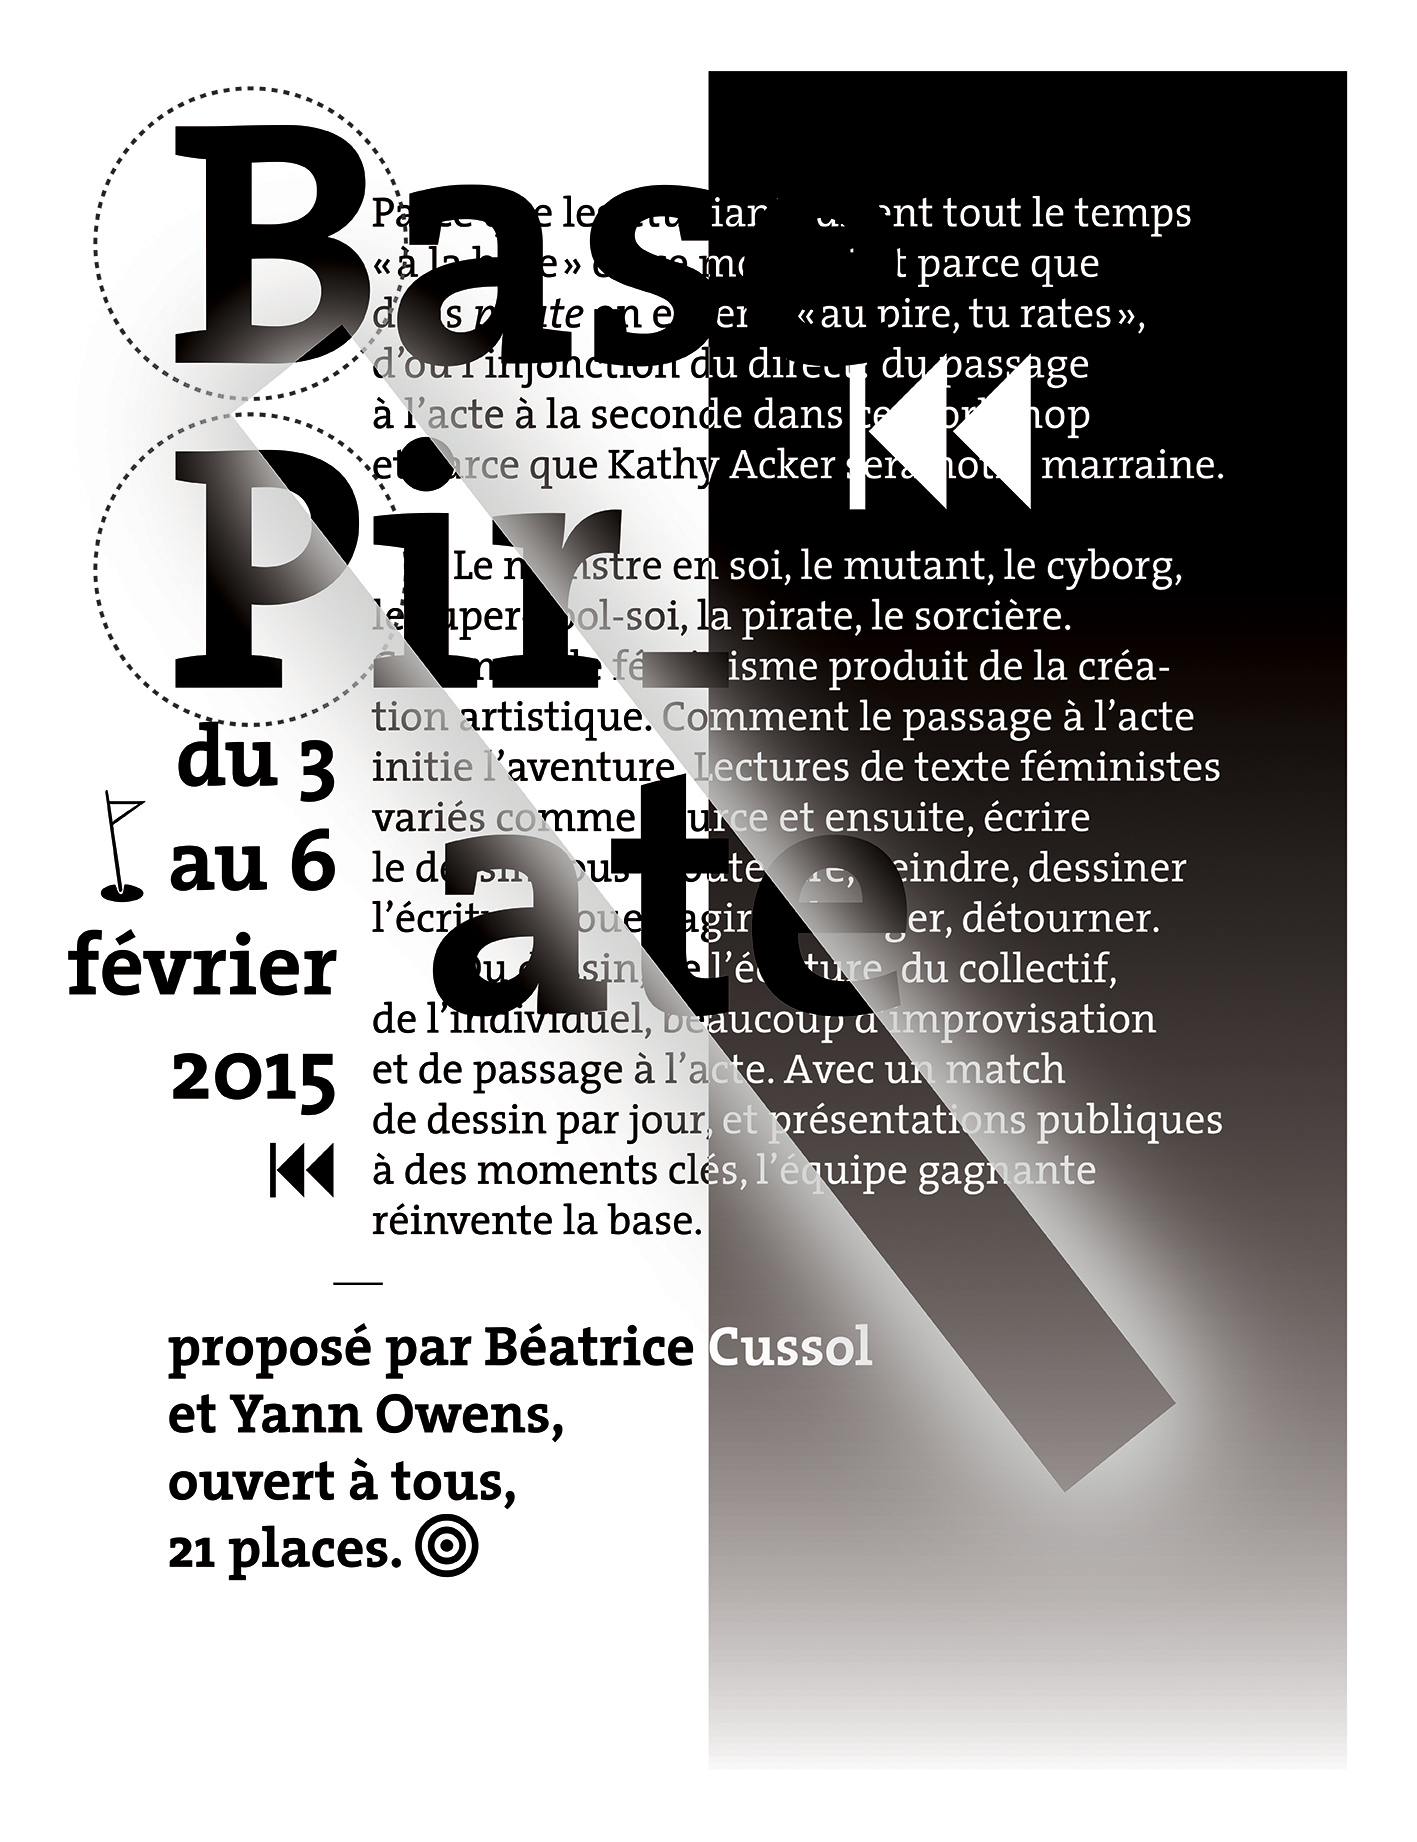 Affiche pour le workshop Base Pirate de Béatrice Cussol